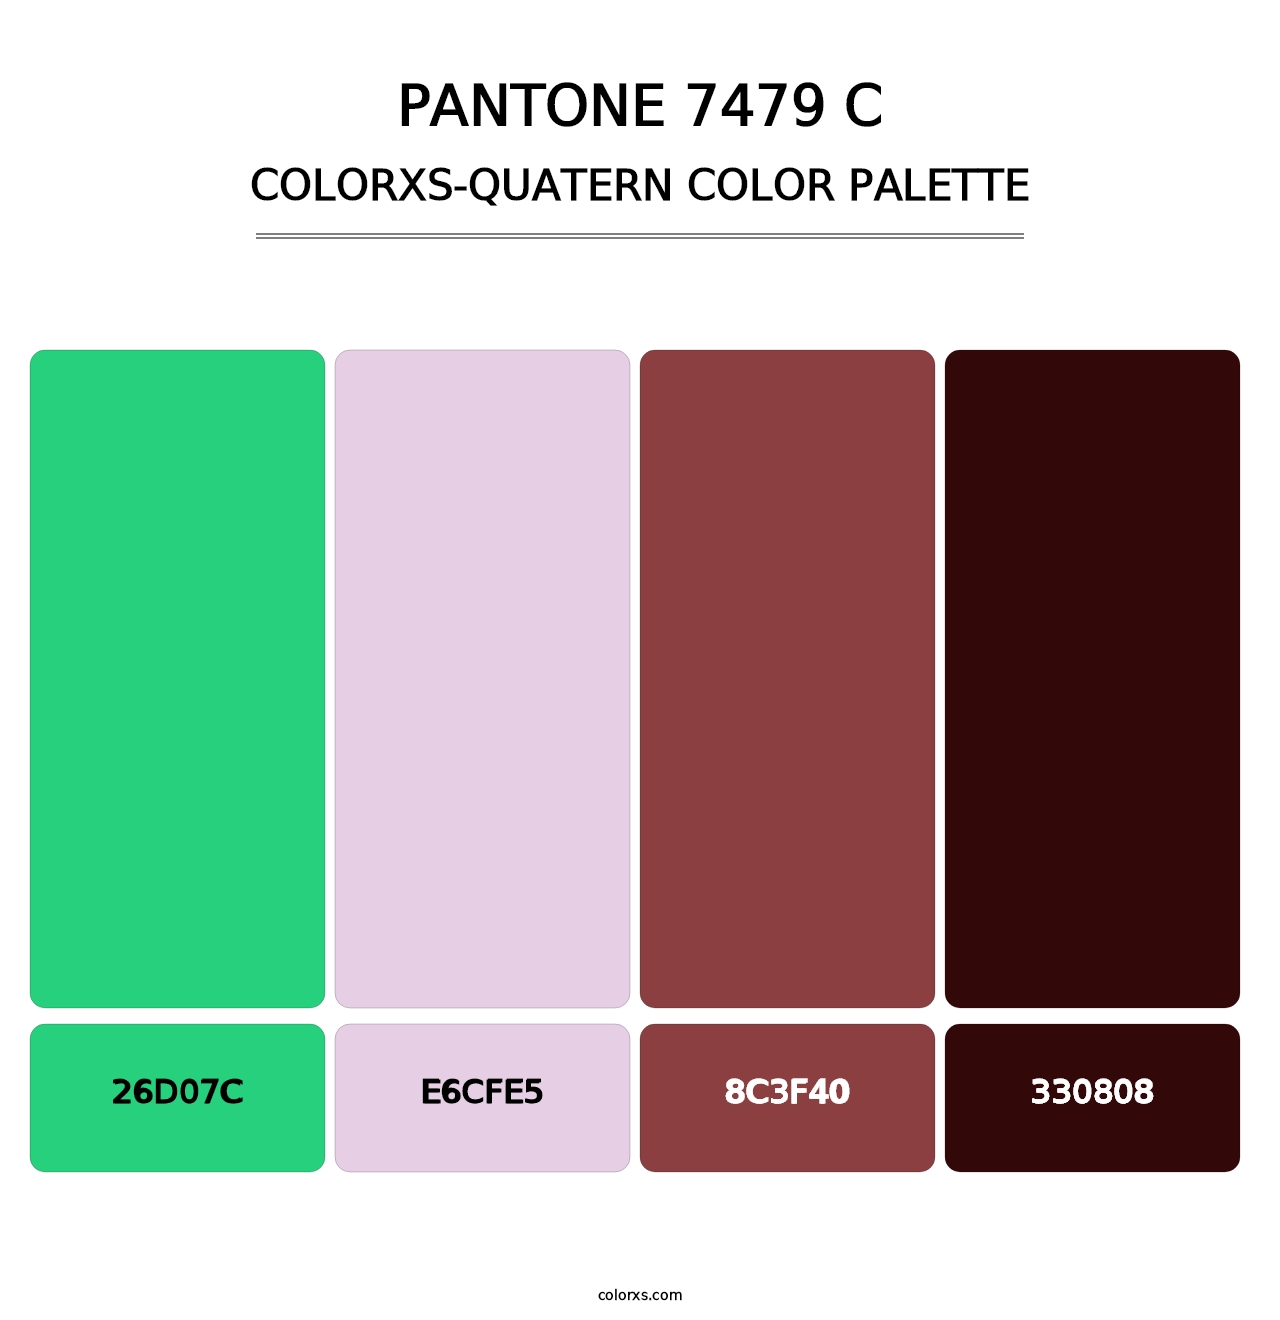 PANTONE 7479 C - Colorxs Quatern Palette